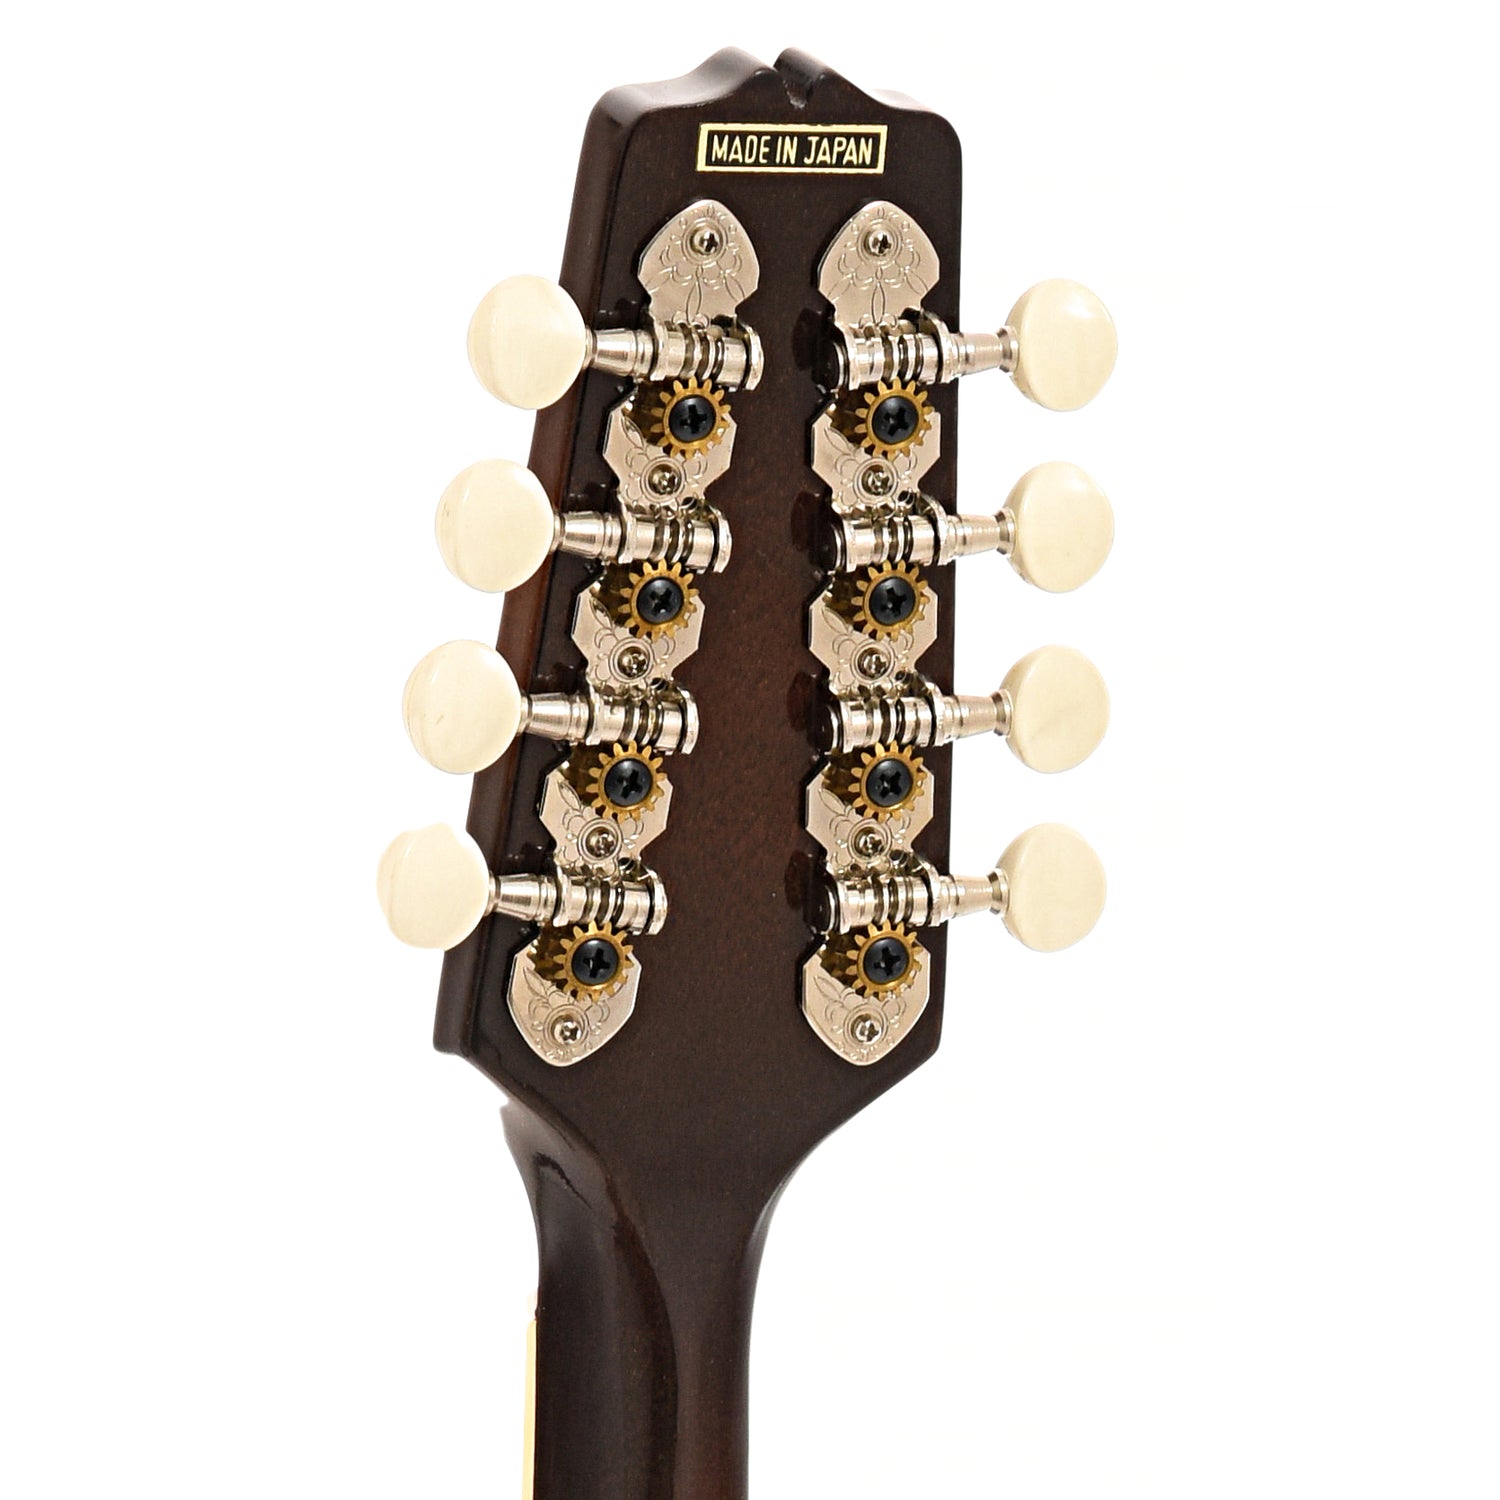 Back headstock of Kentucky KM250S mandolin